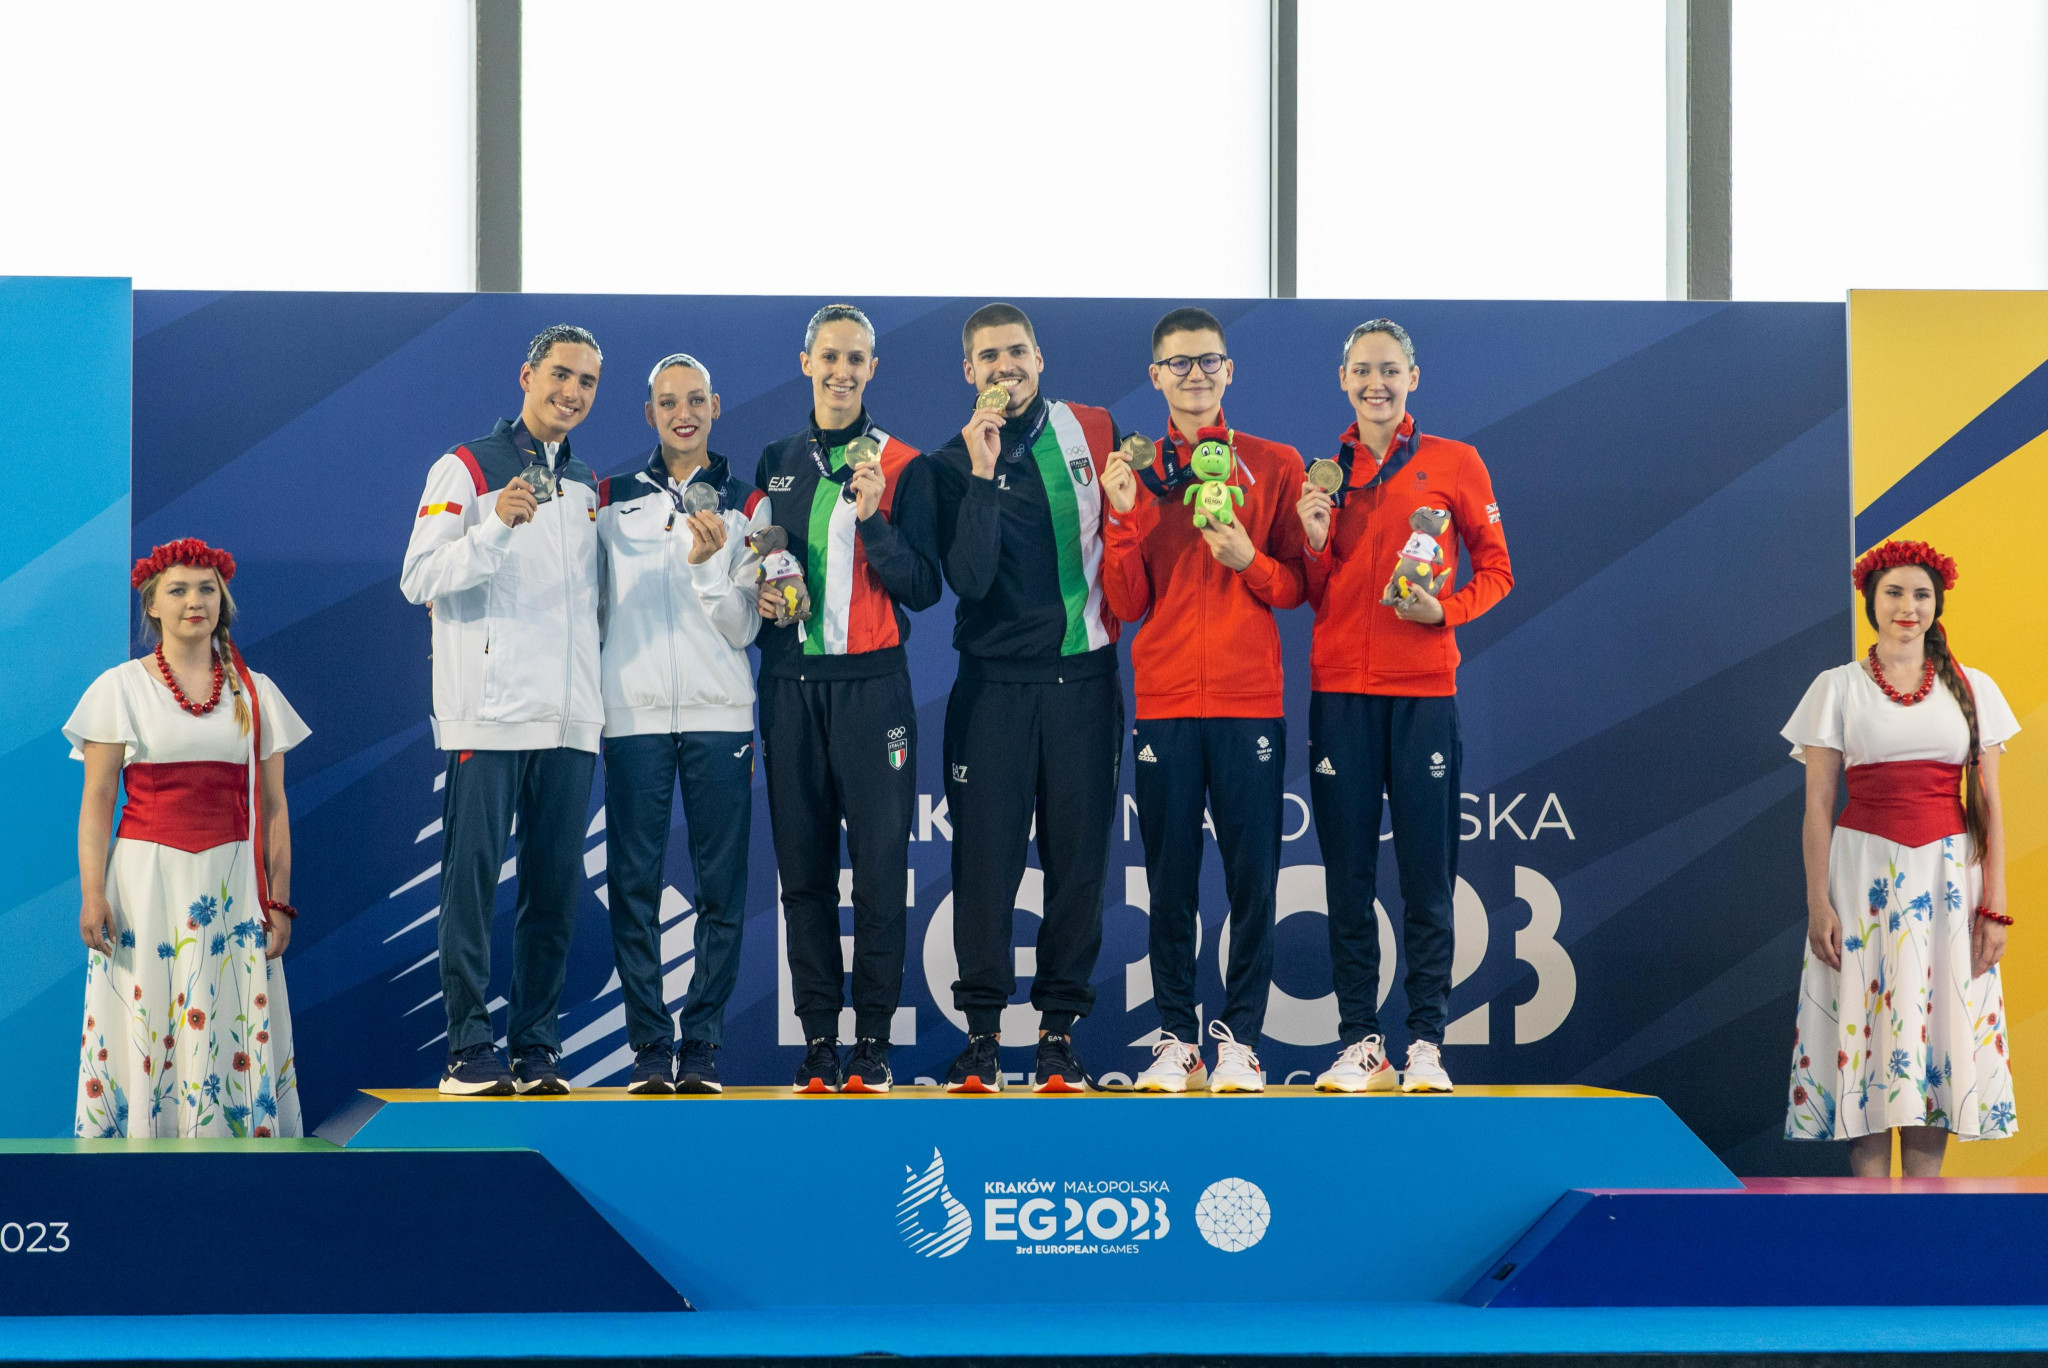 Italy's Giorgio Minisini, third right on podium, and Lucrezia Ruggiero, third left, won the first gold of the European Games ©Kraków-Małopolska 2023